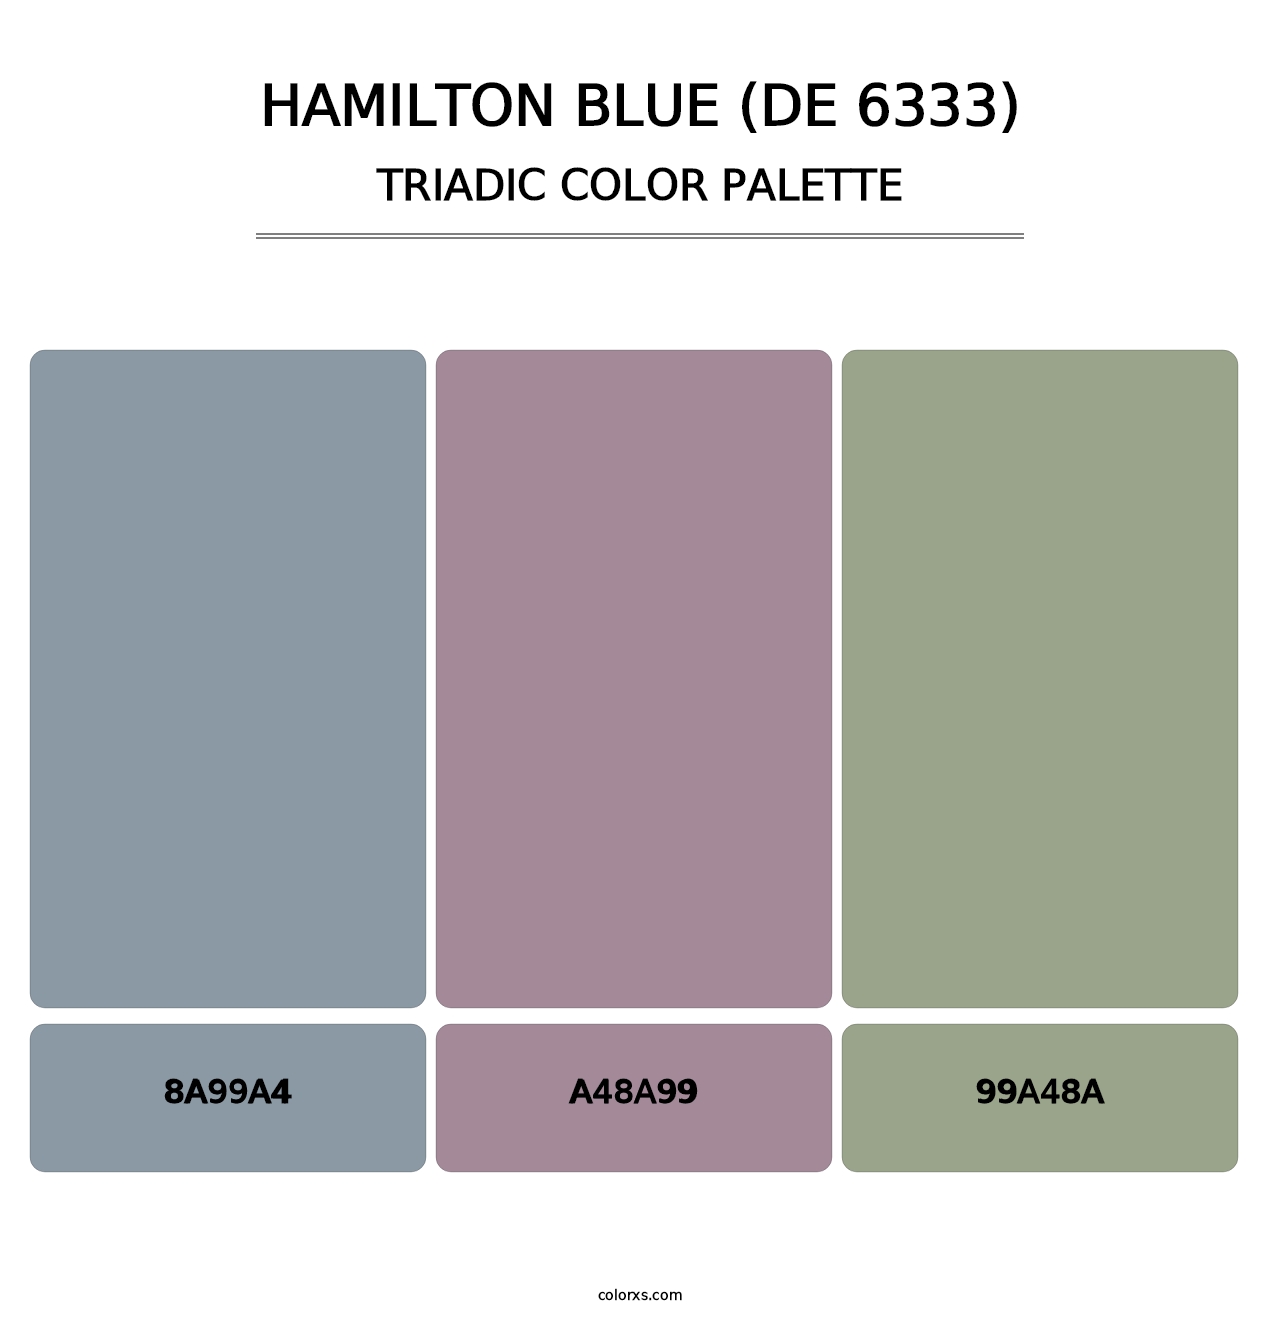 Hamilton Blue (DE 6333) - Triadic Color Palette